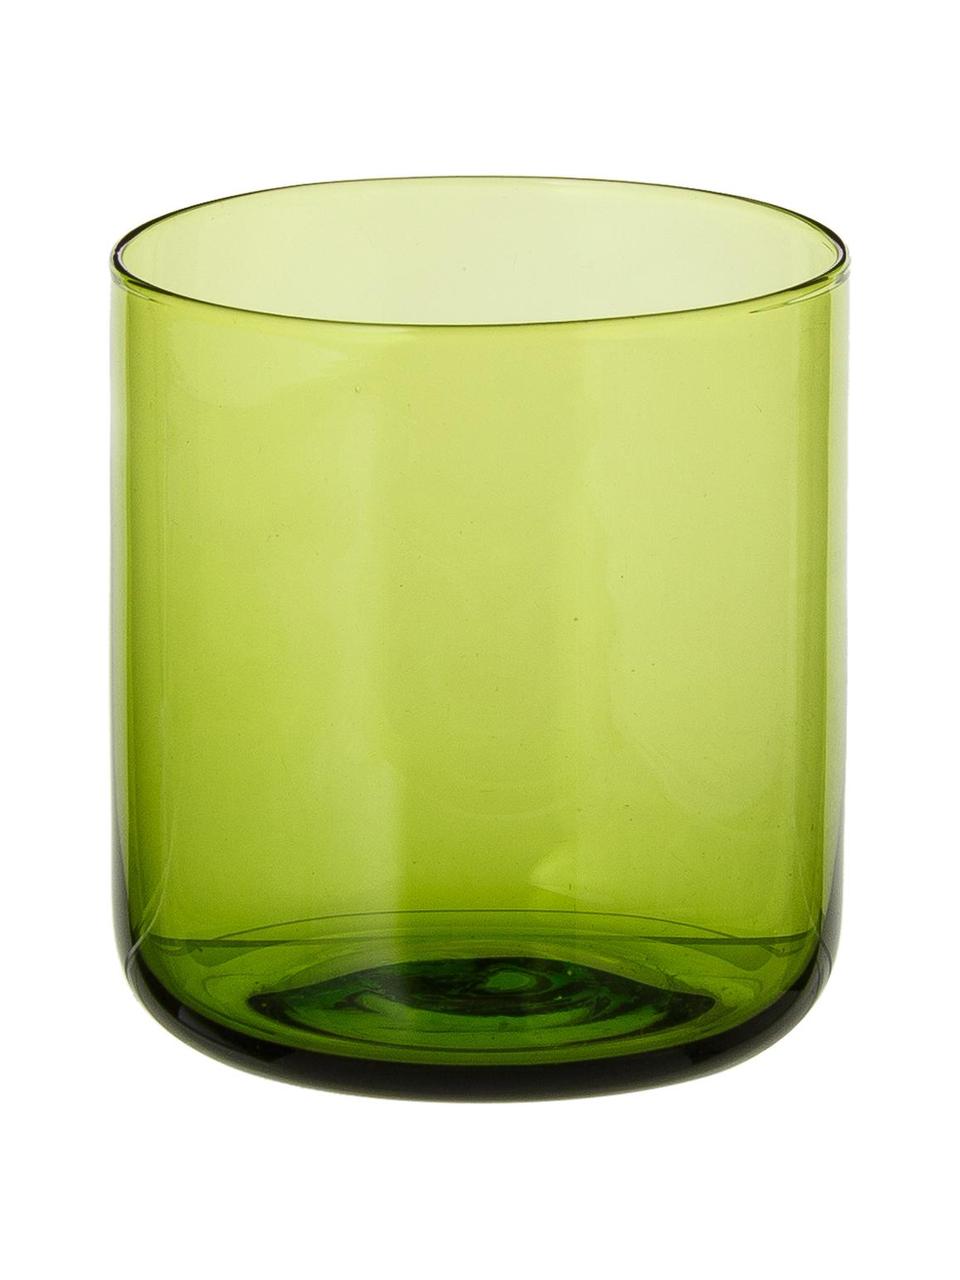 Mondgeblazen waterglazen Bloom in groen, 6 stuks, Mondgeblazen glas, Groen, Ø 7 cm x H 8 cm, 220 ml